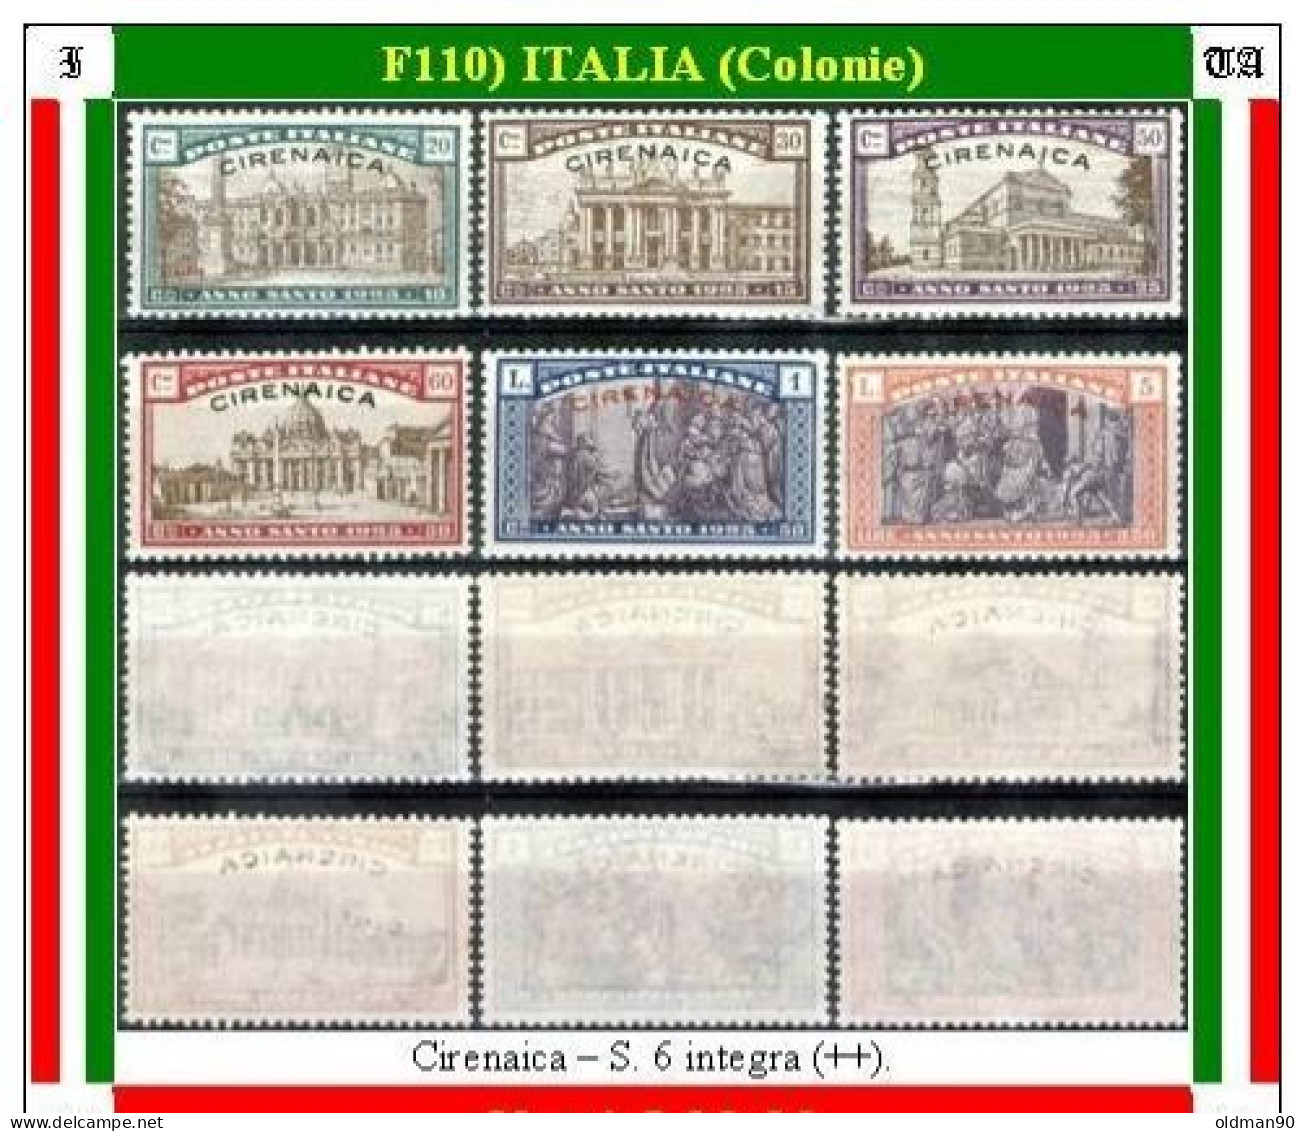 Italia-F00110- Cirenaica 1925 (++) MNH - Qualità A Vostro Giudizio. - Cirenaica